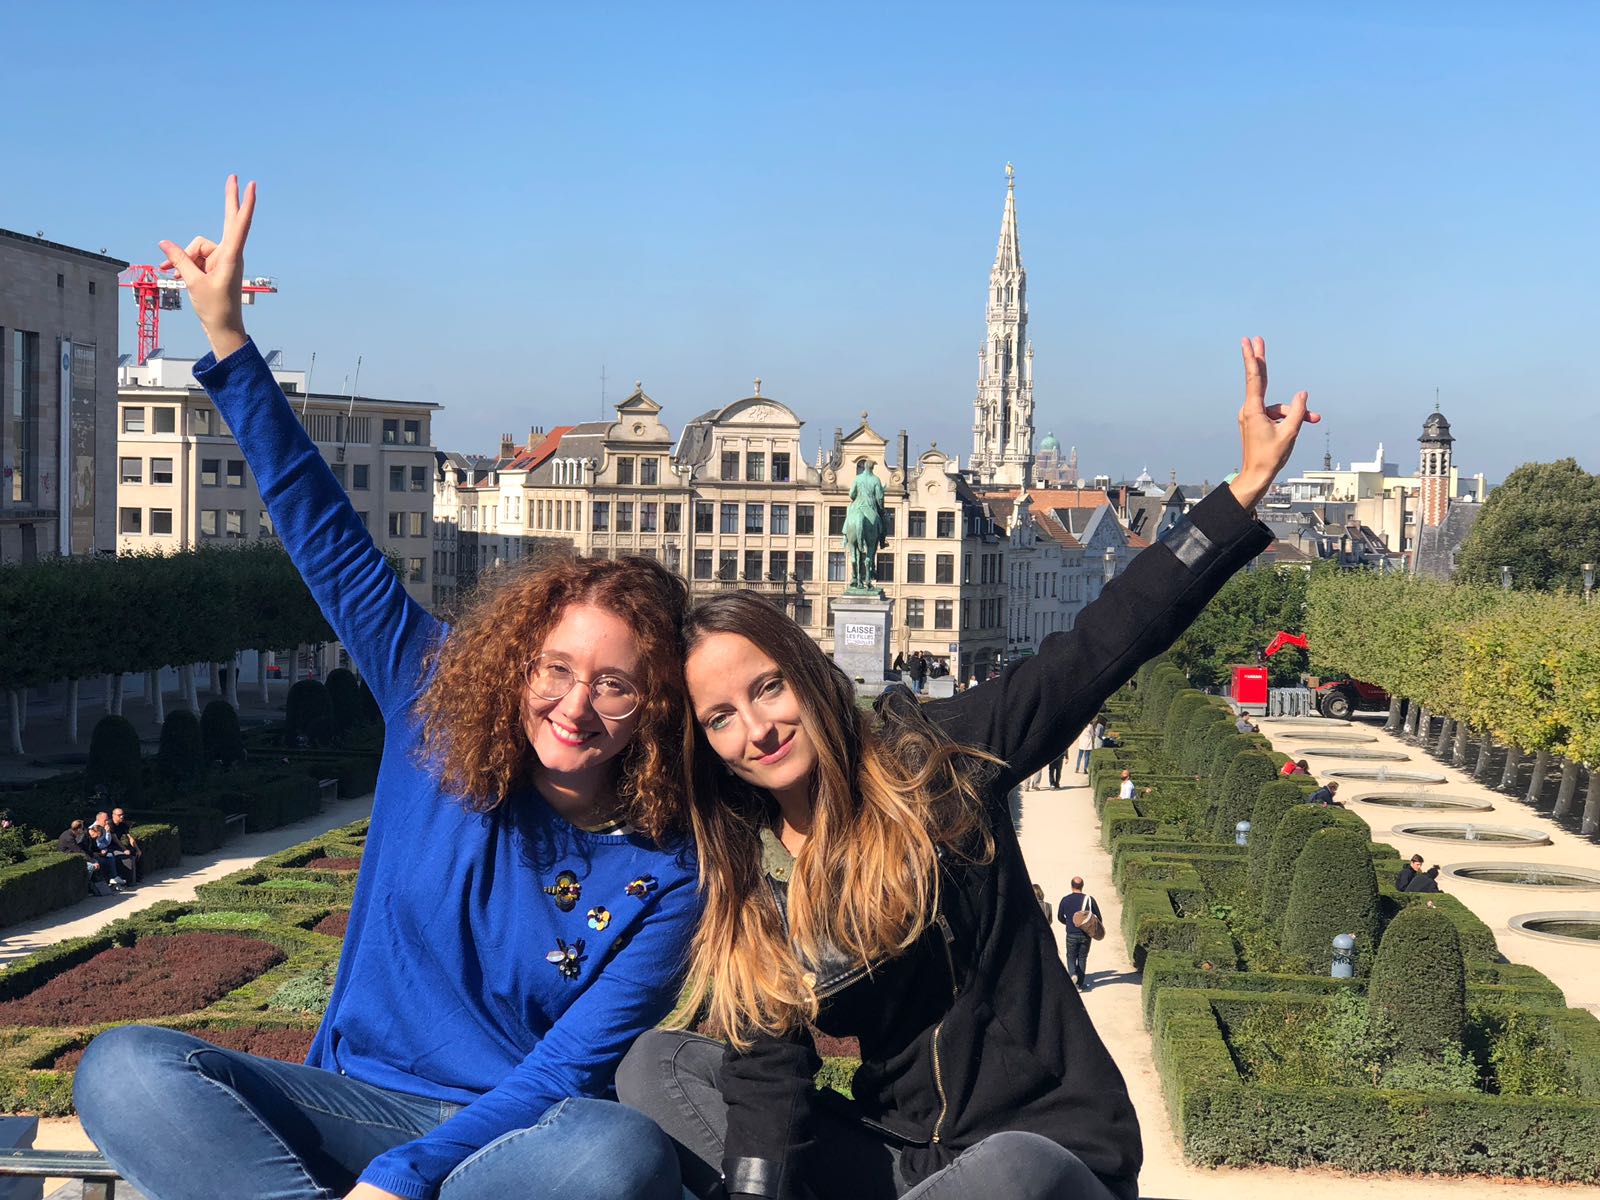 Busca compañeros de viaje y visita Bruselas este invierno